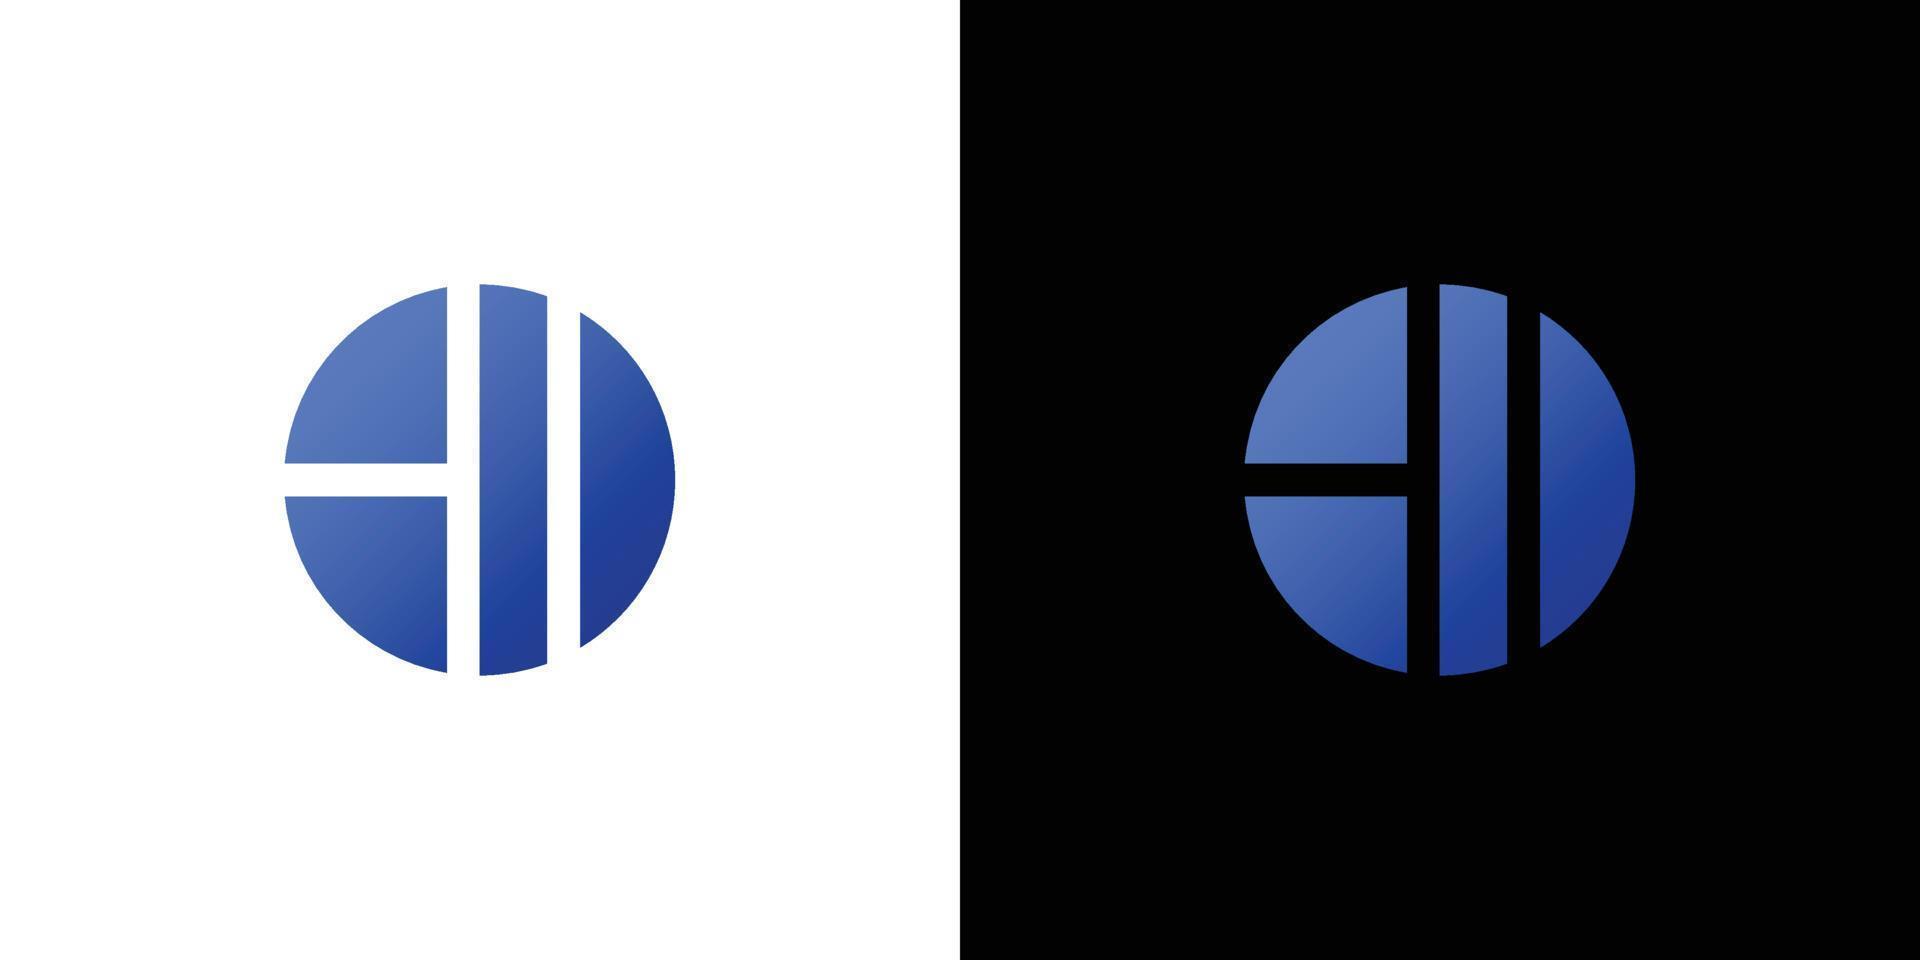 modern och enkel hi letter initialer logotyp abstrakt design vektor